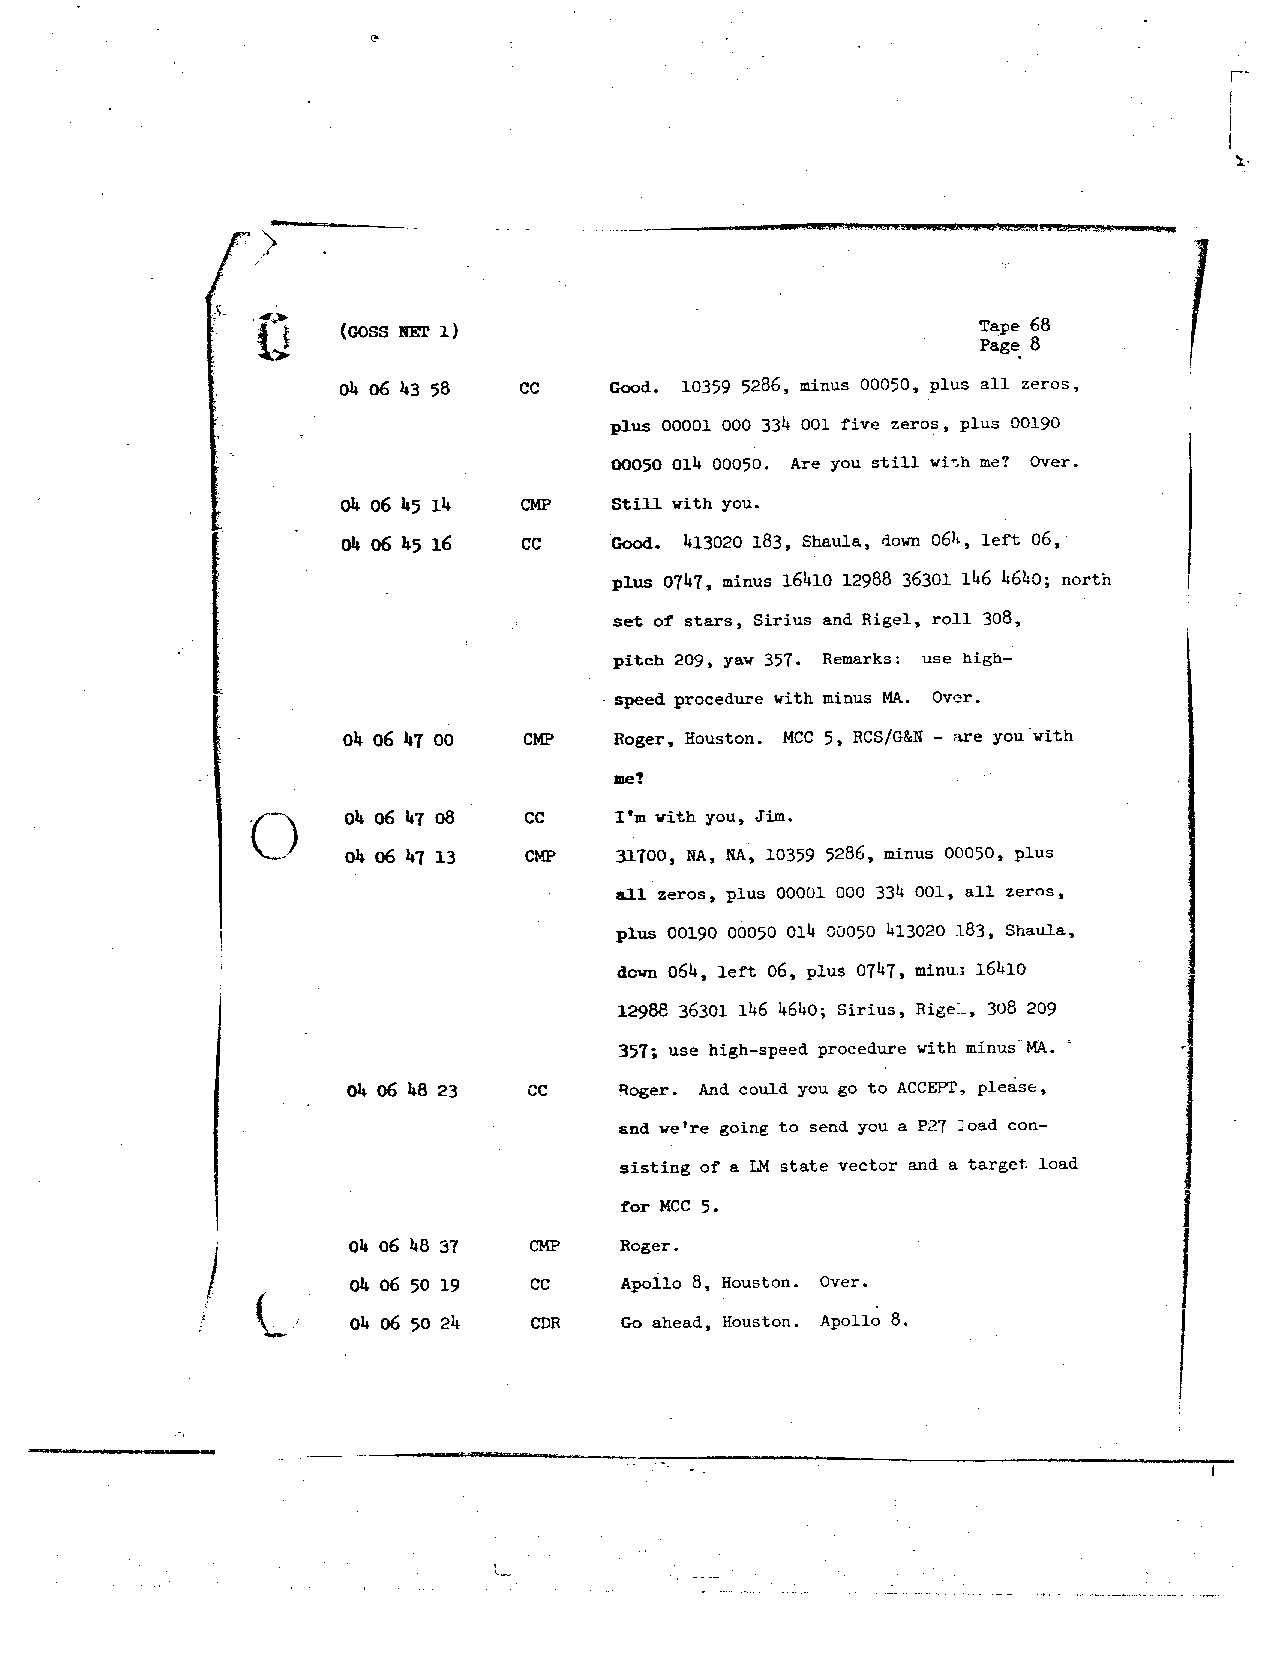 Page 540 of Apollo 8’s original transcript